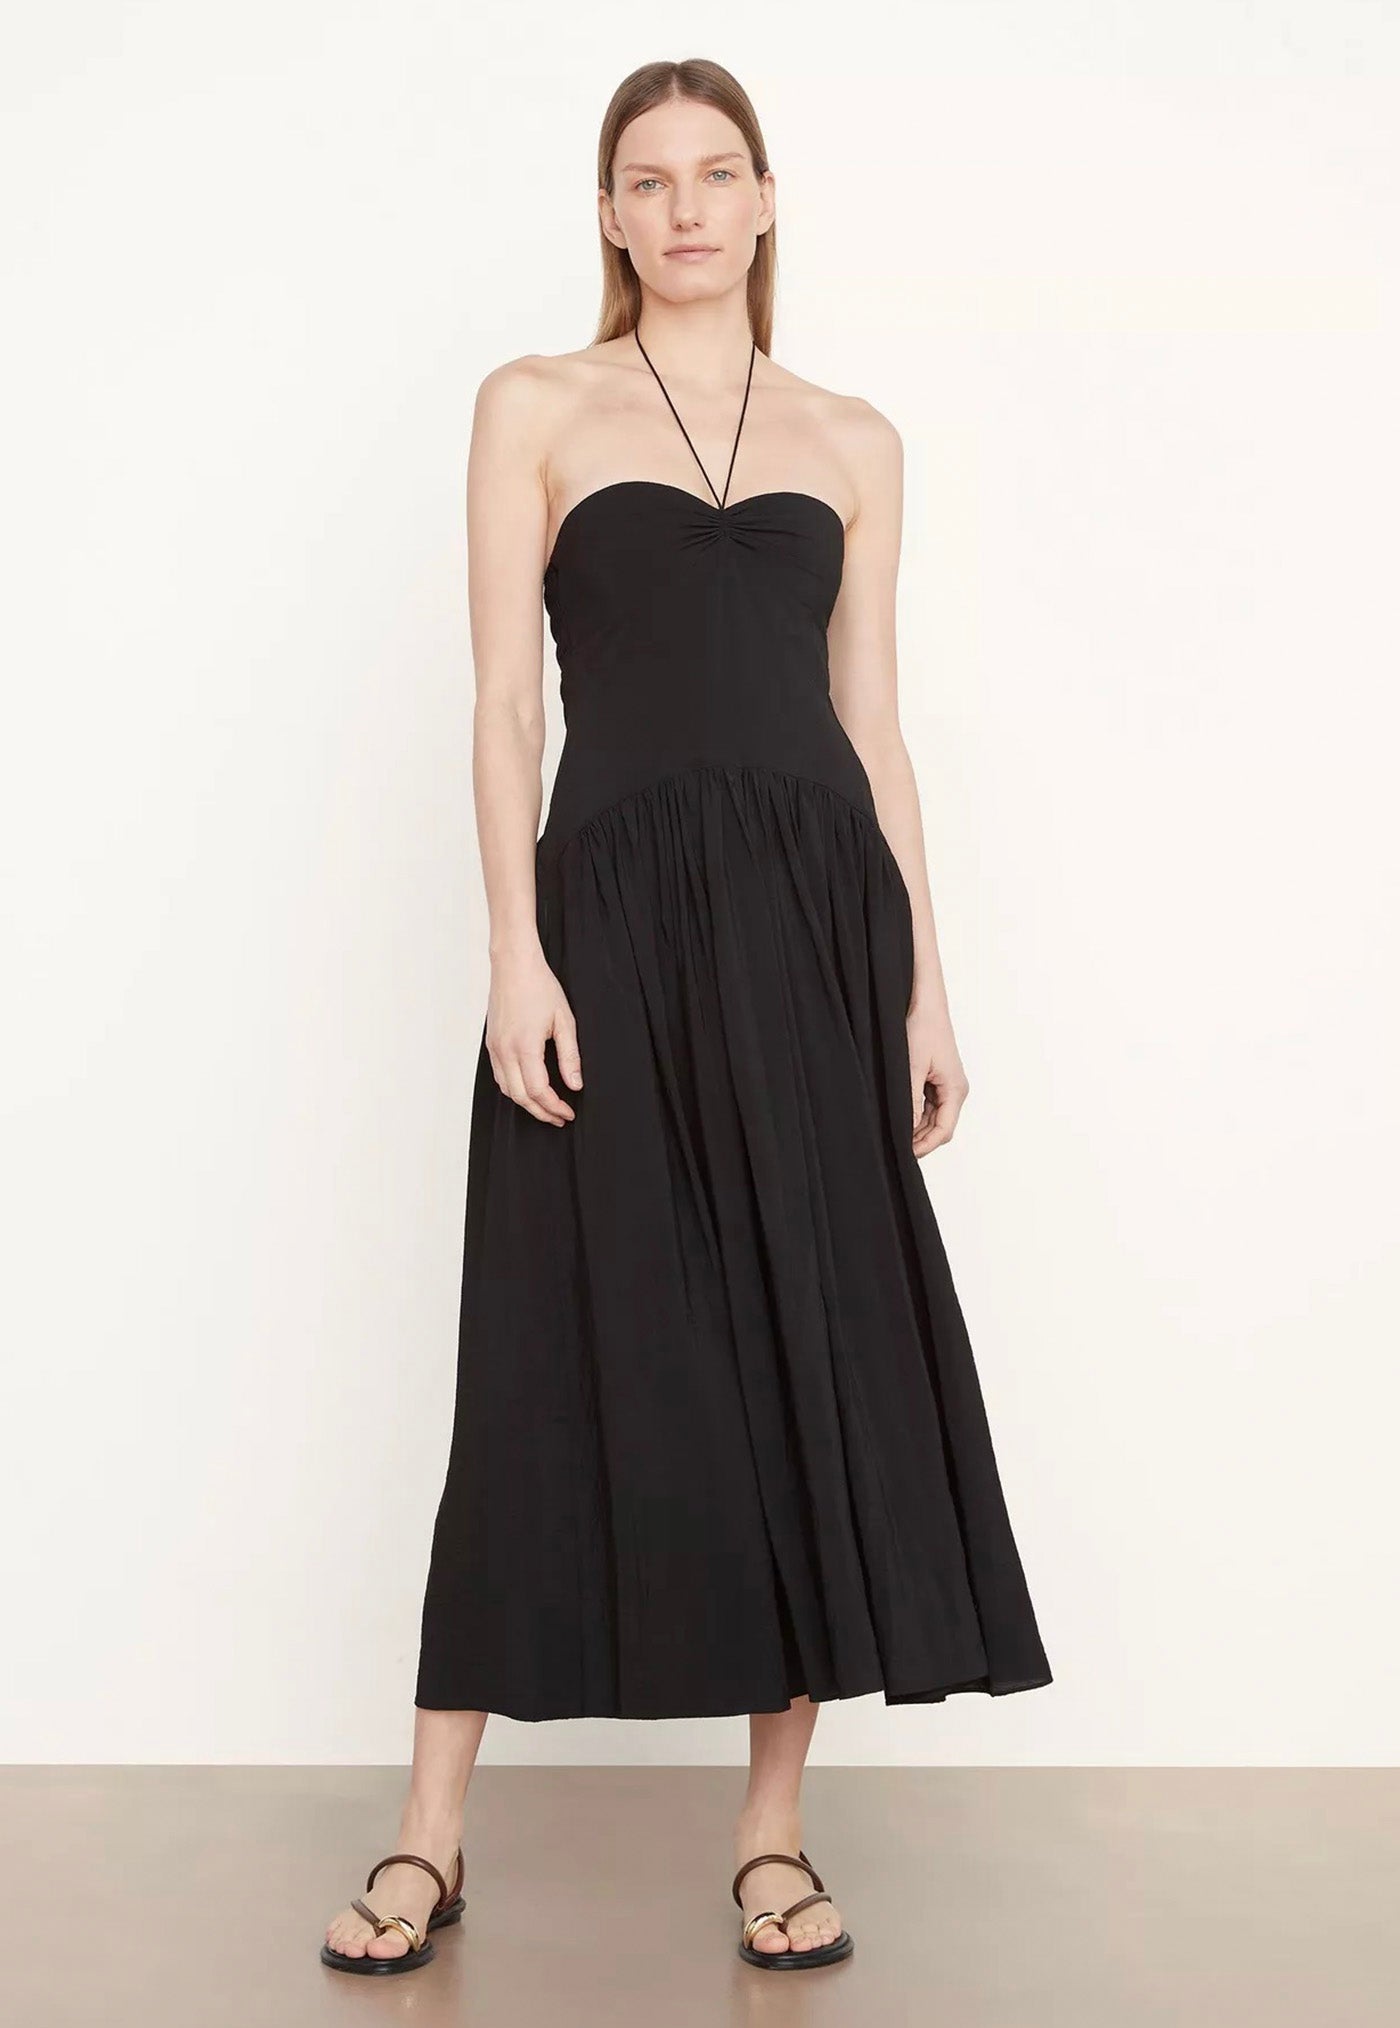 Ruched Halter Neck Dress - Black sold by Angel Divine